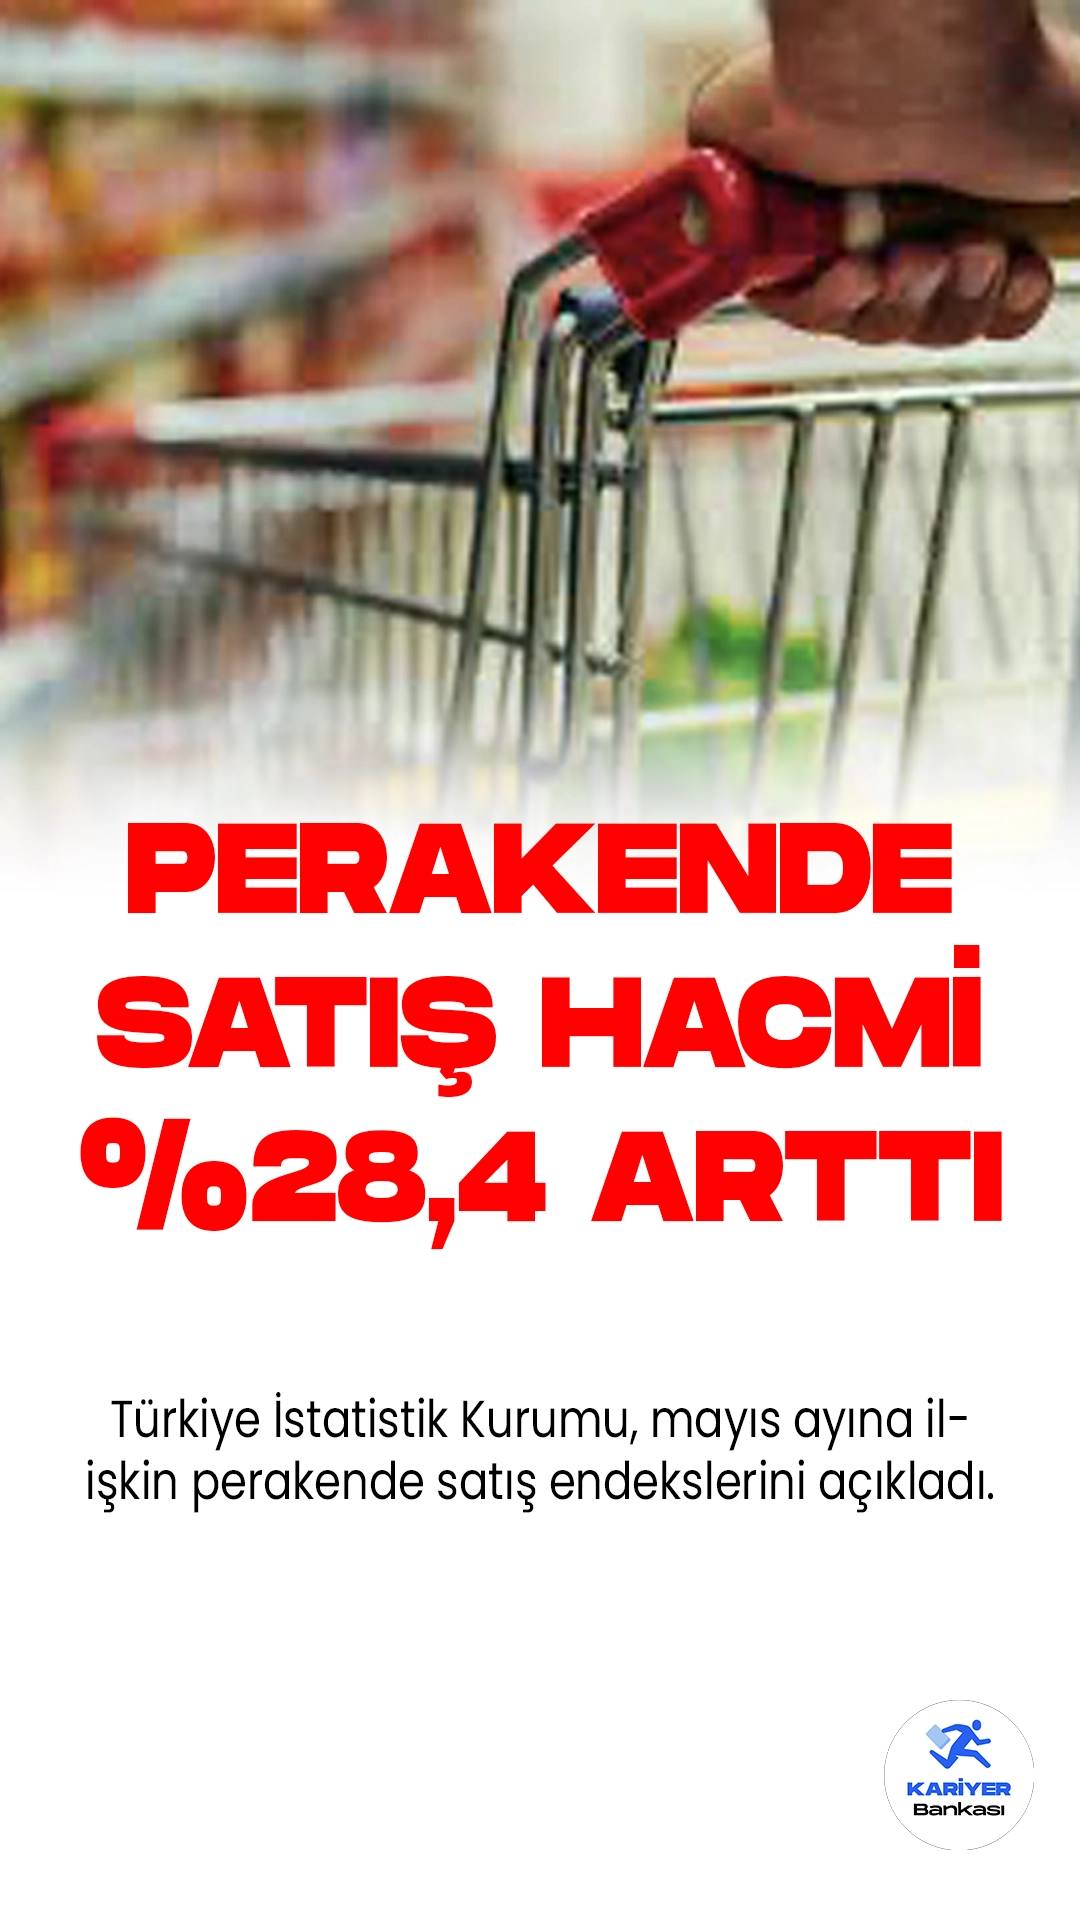 Sabit Fiyatlarla Perakende Satış Hacmi Mayıs'ta %28,4 Arttı.Türkiye İstatistik Kurumu, mayıs ayına ilişkin perakende satış endekslerini açıkladı. Mayıs'ta, sabit fiyatlarla perakende satış hacmi geçen yılın aynı ayına göre büyük bir artışla %28,4 yükseldi.